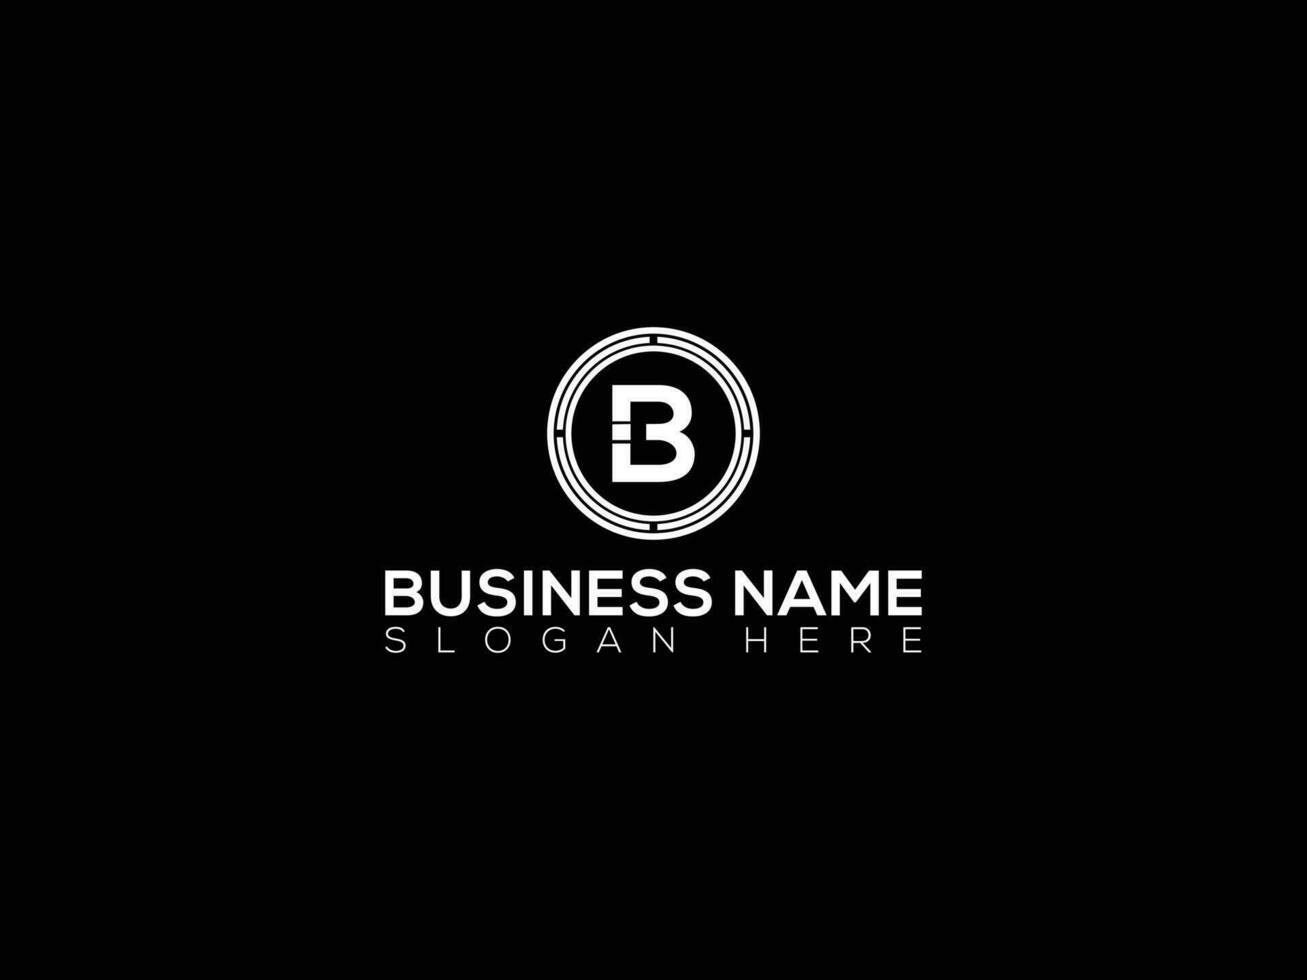 Elegant B vector logo. Premium letter B logo design.